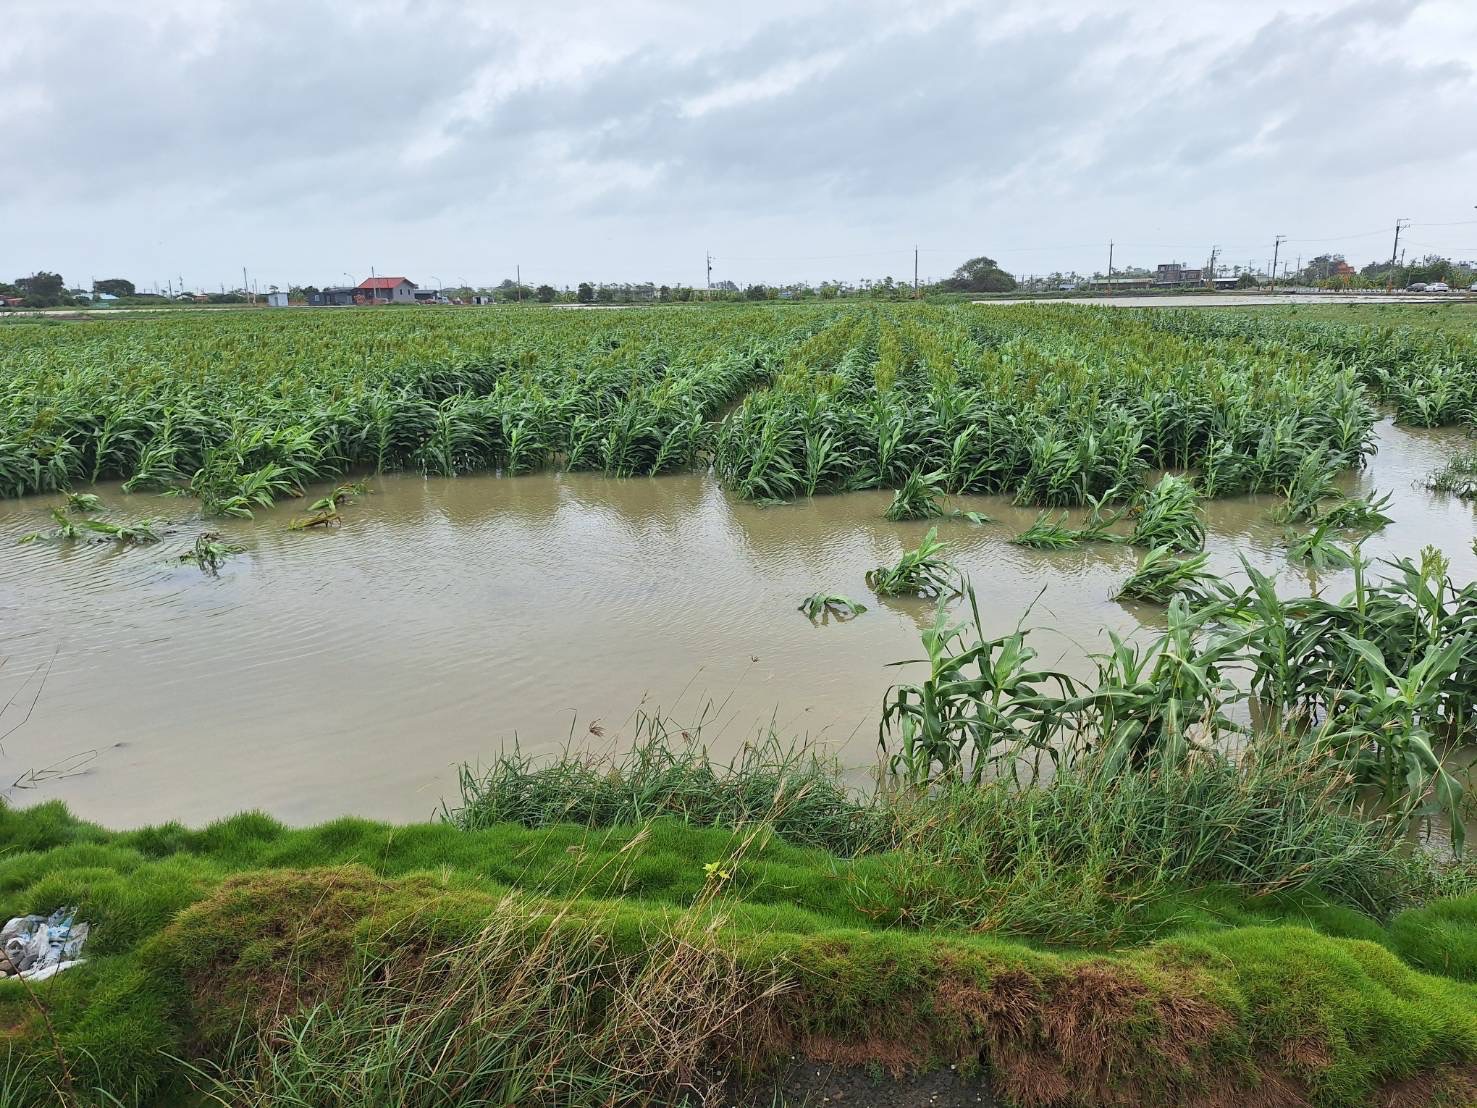 臺南市農產業受凱米颱風災損  7月27日至8月5日受理現金救助申請